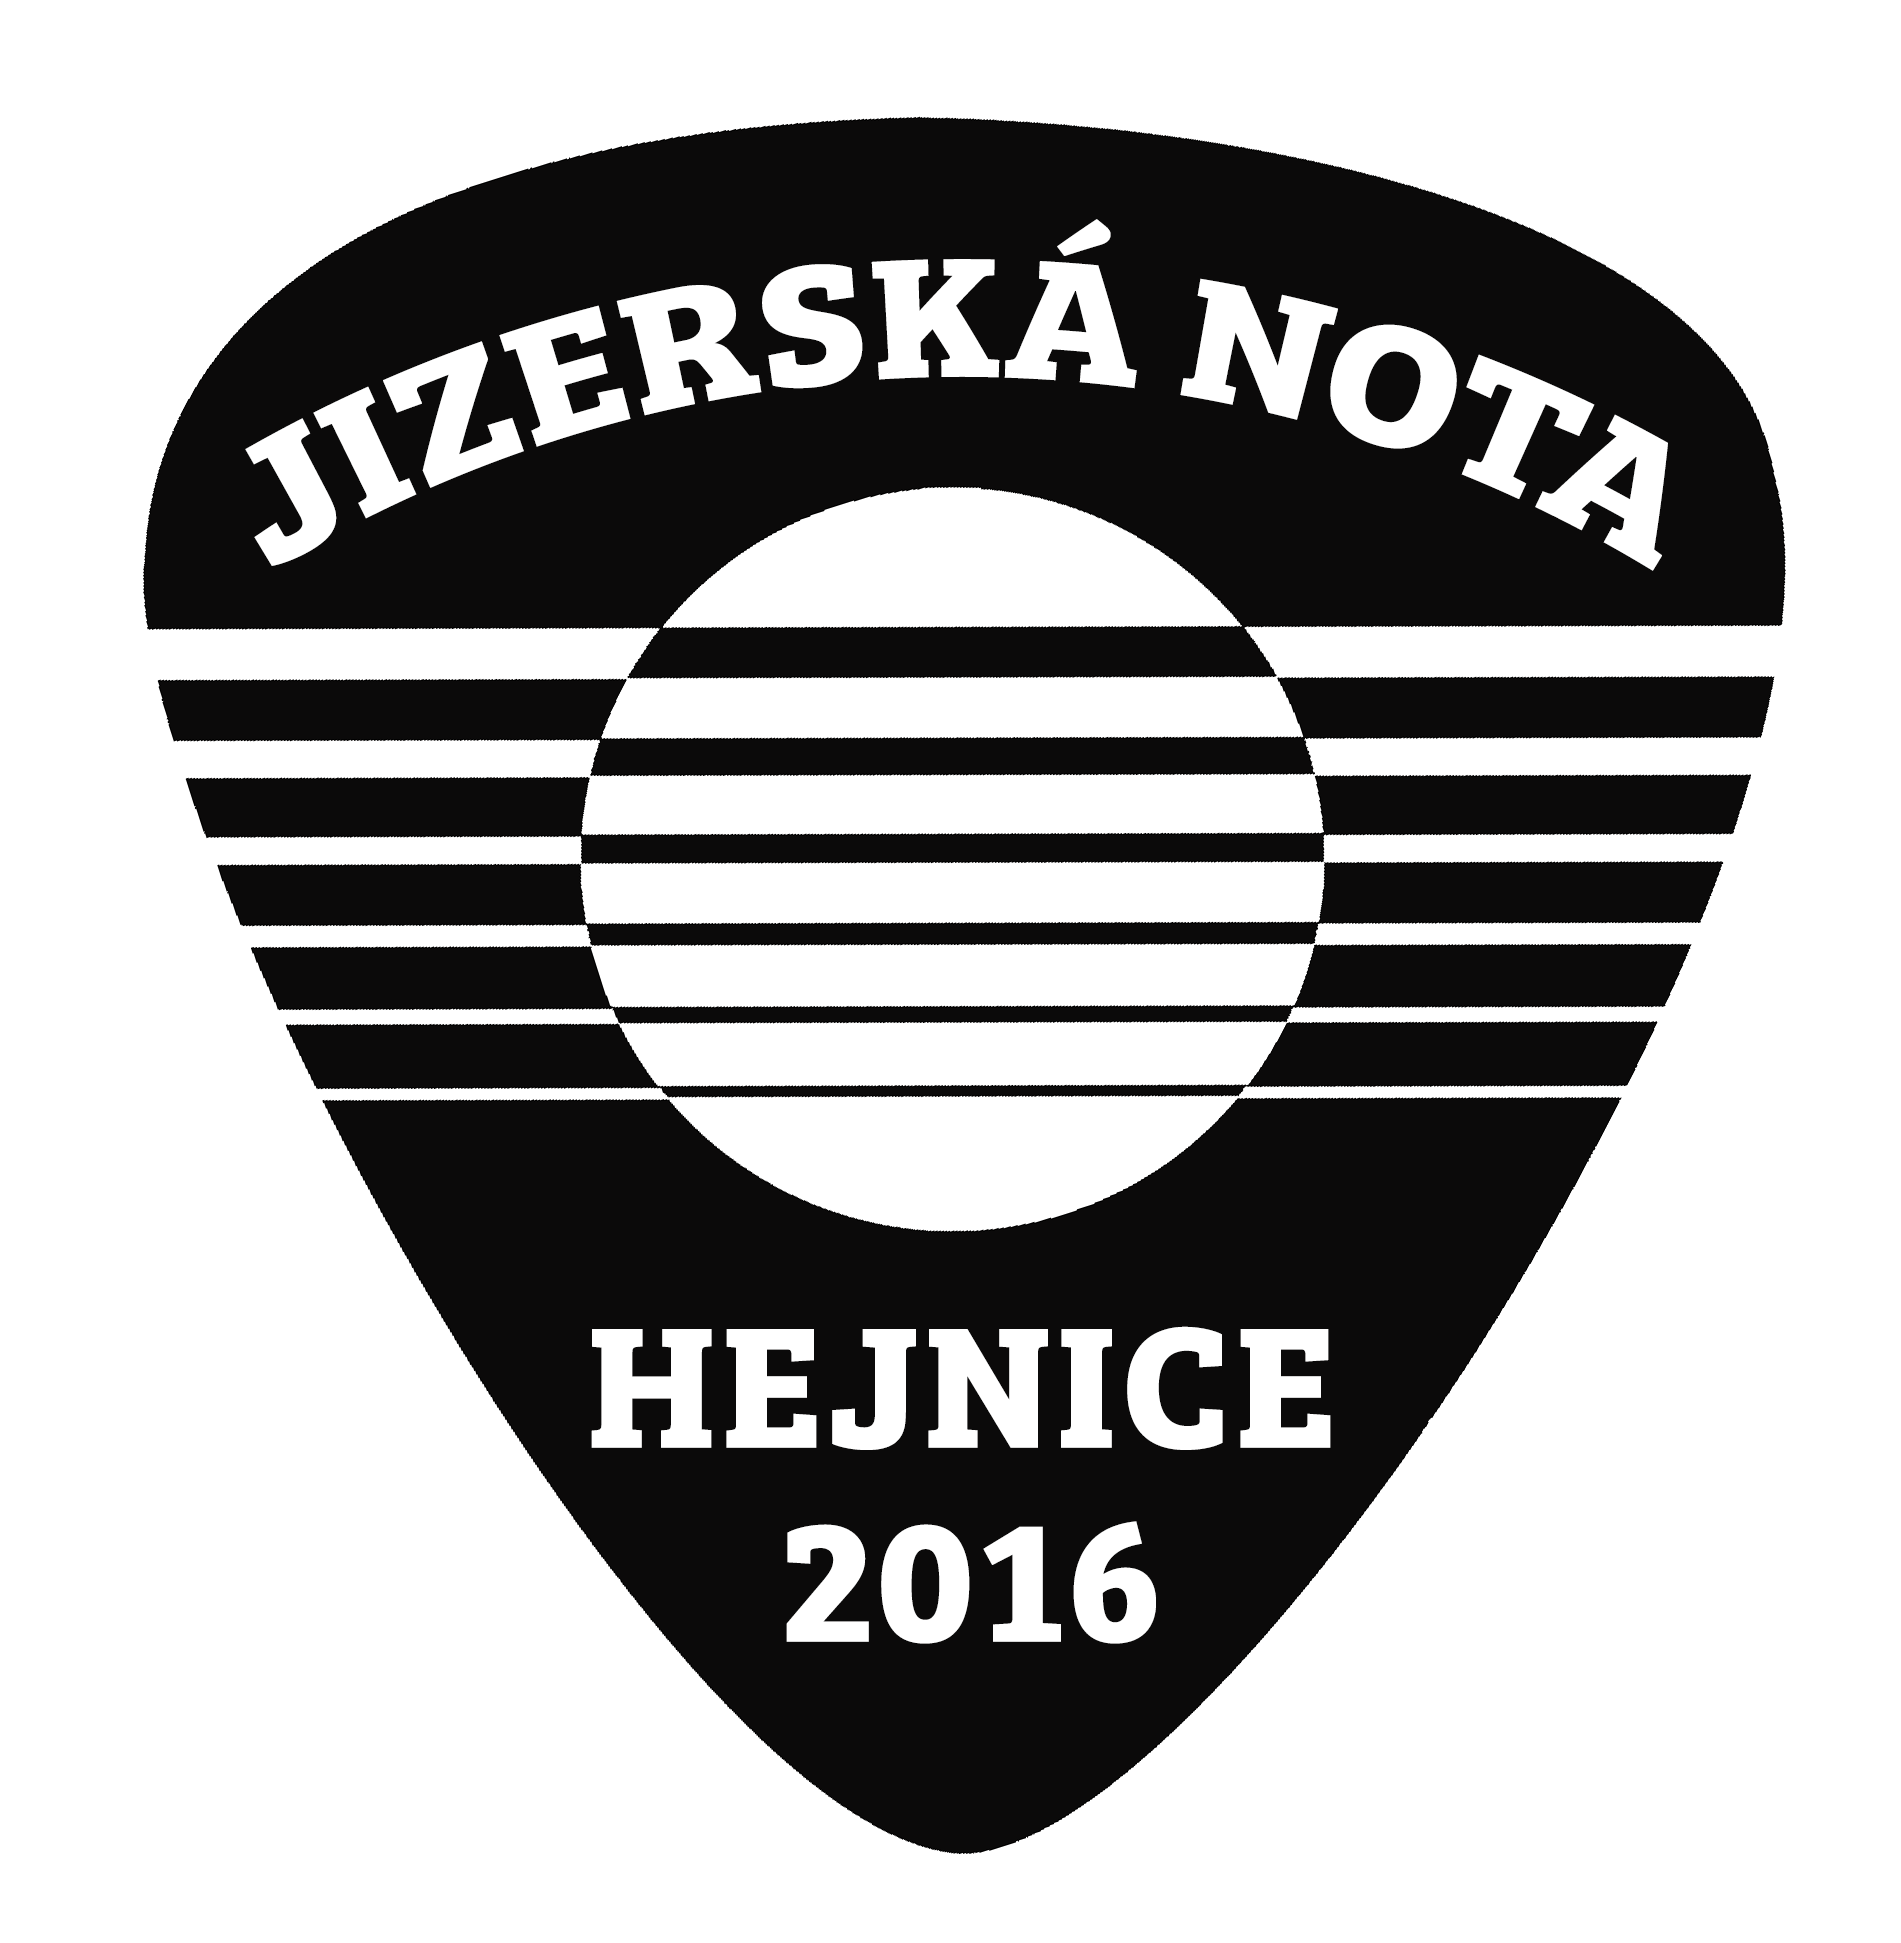 35. ročník legendární Jizerské noty se uskuteční 23.-24. září 2016 v Hejnicích